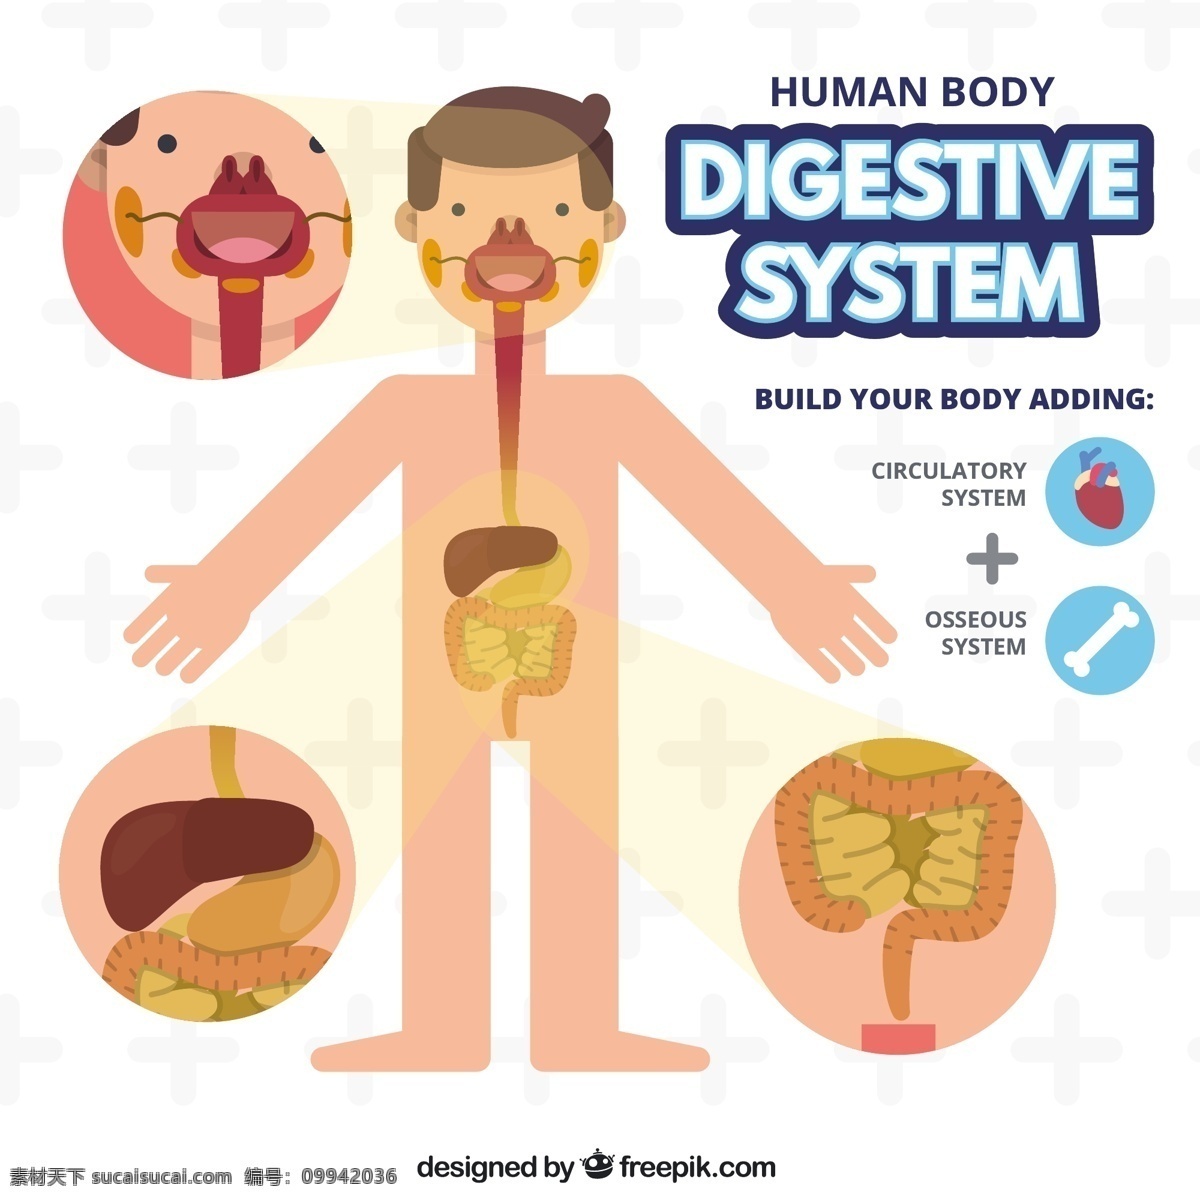 人体消化系统 心 人 模板 平板 医学 口腔 平面设计 人体 系统 骨骼 胃 部位 大 肝 体部 小肠 肠 消化道 白色